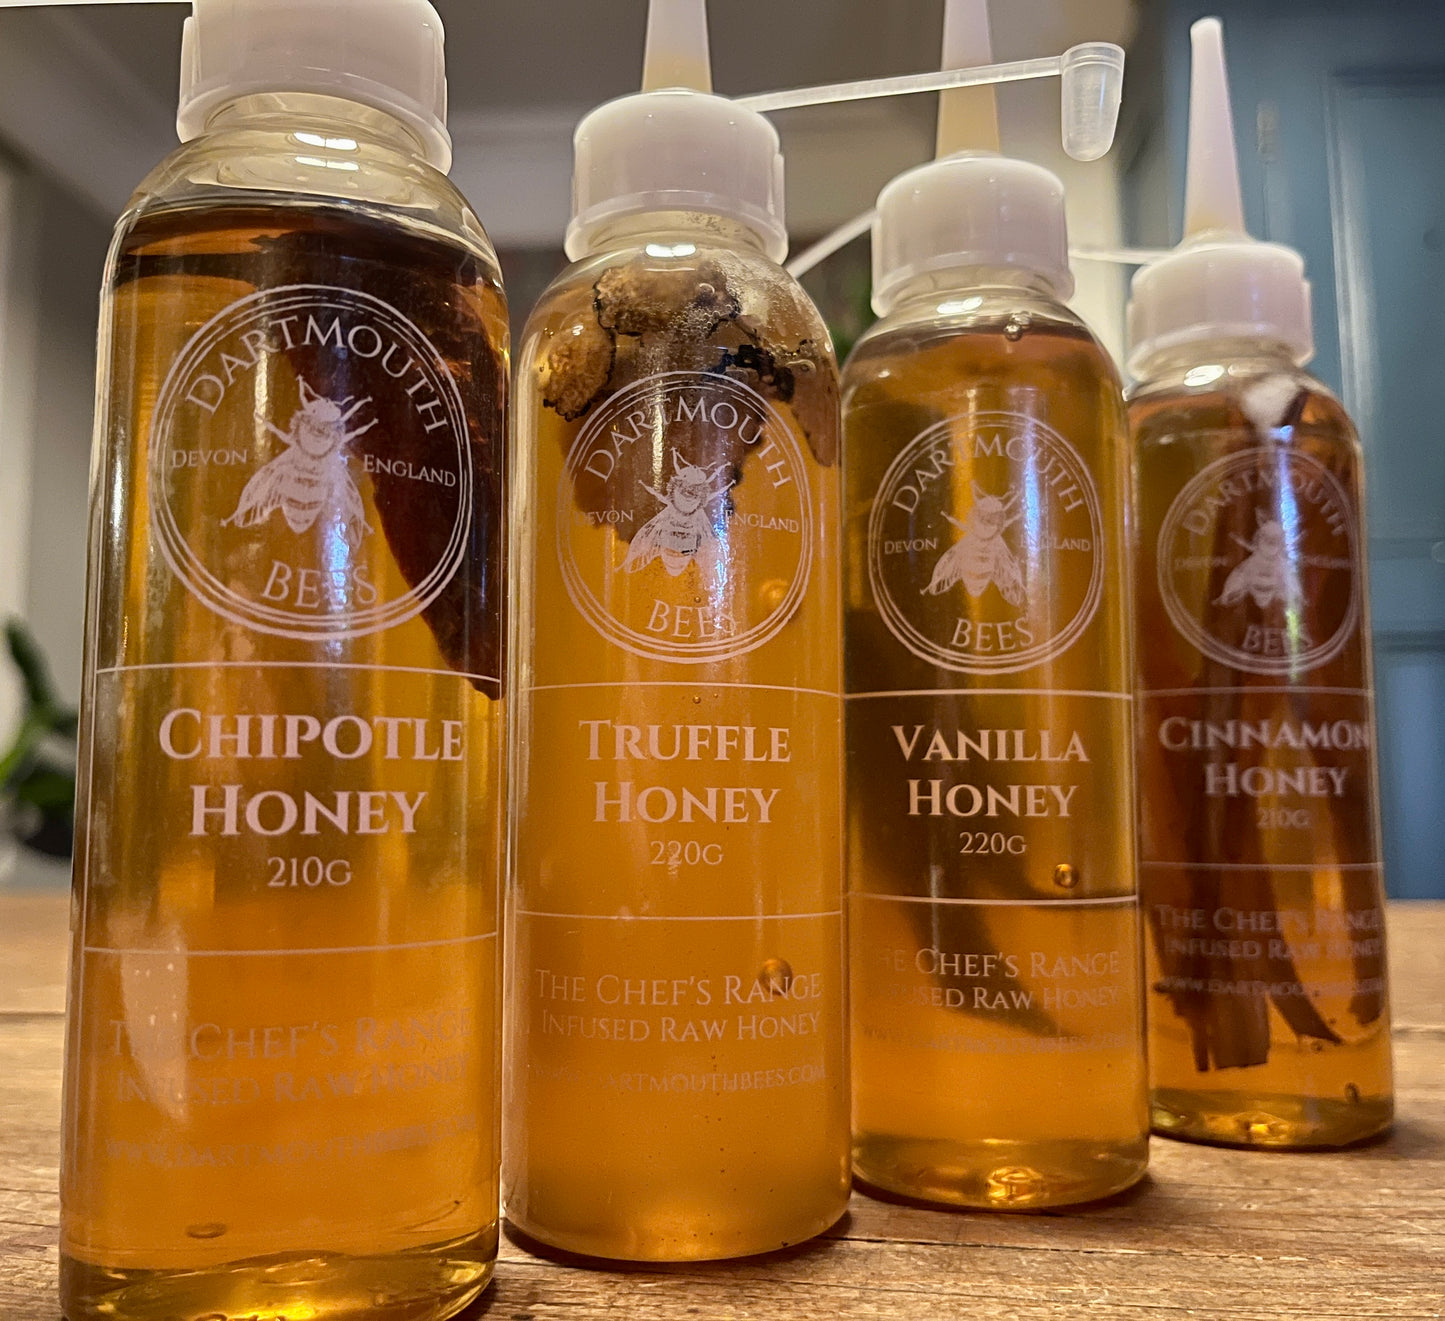 Chipotle honey